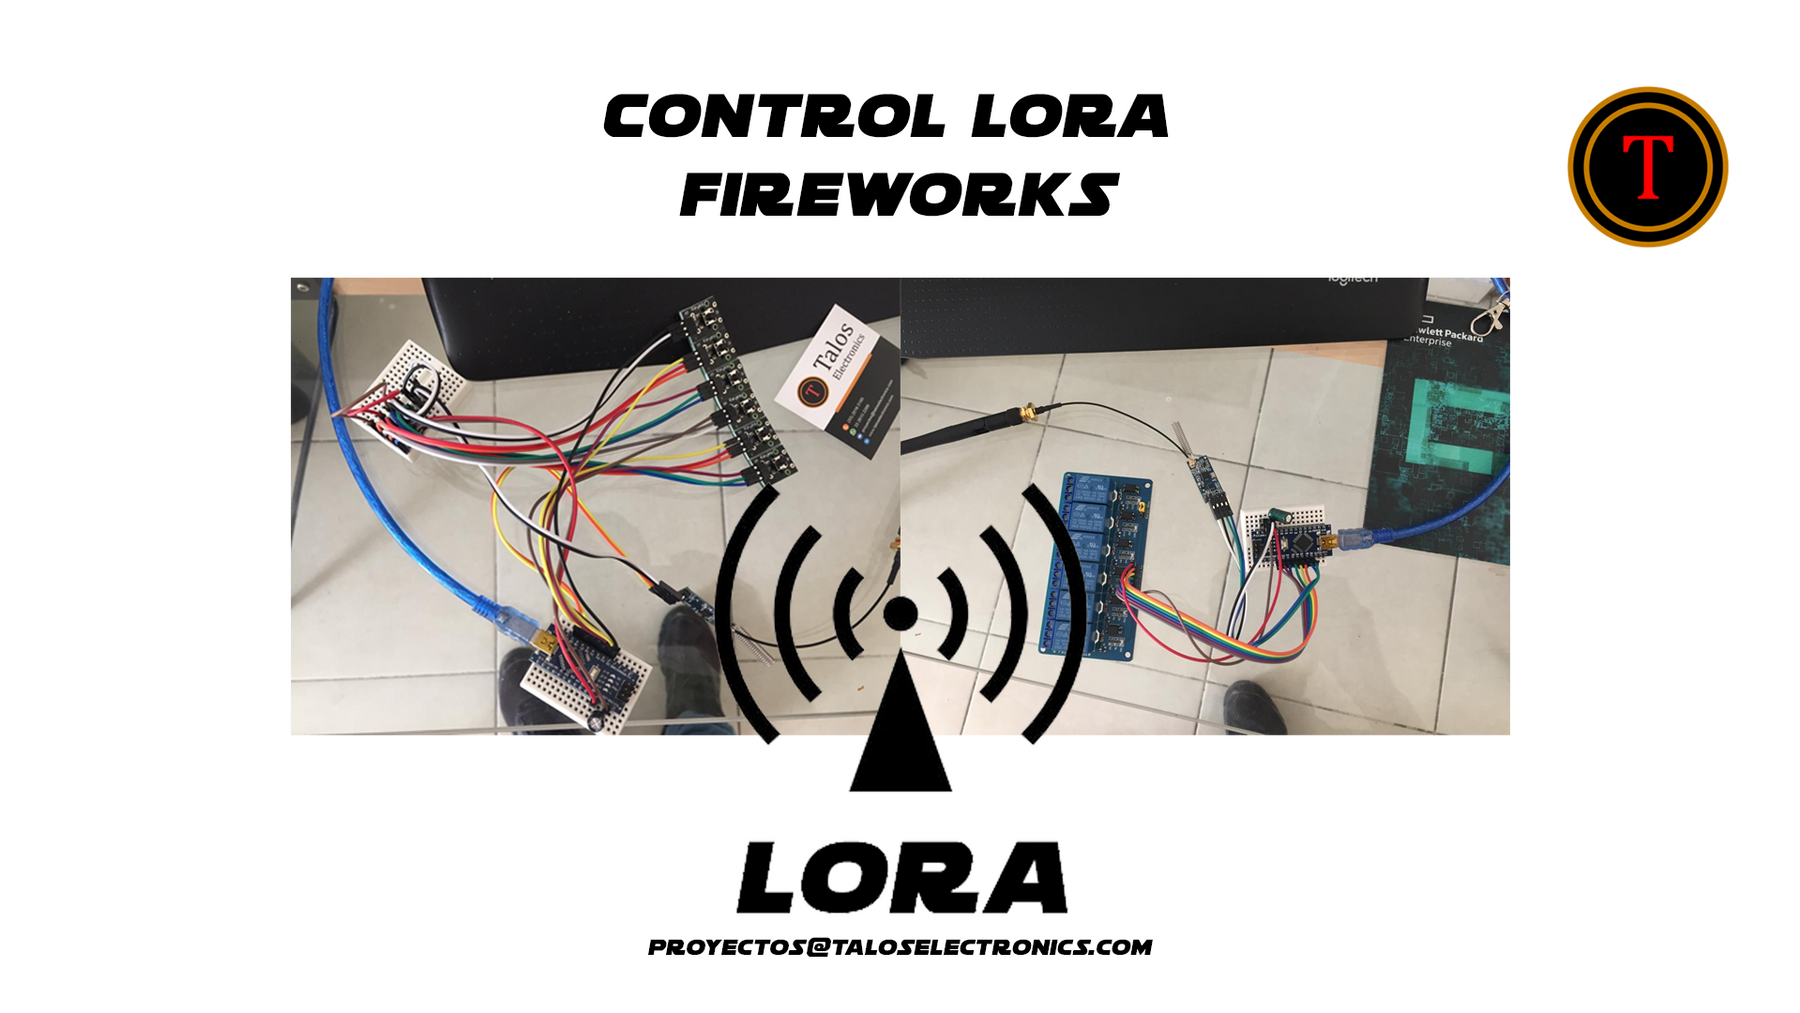 Control LoRa para fuegos artificiales